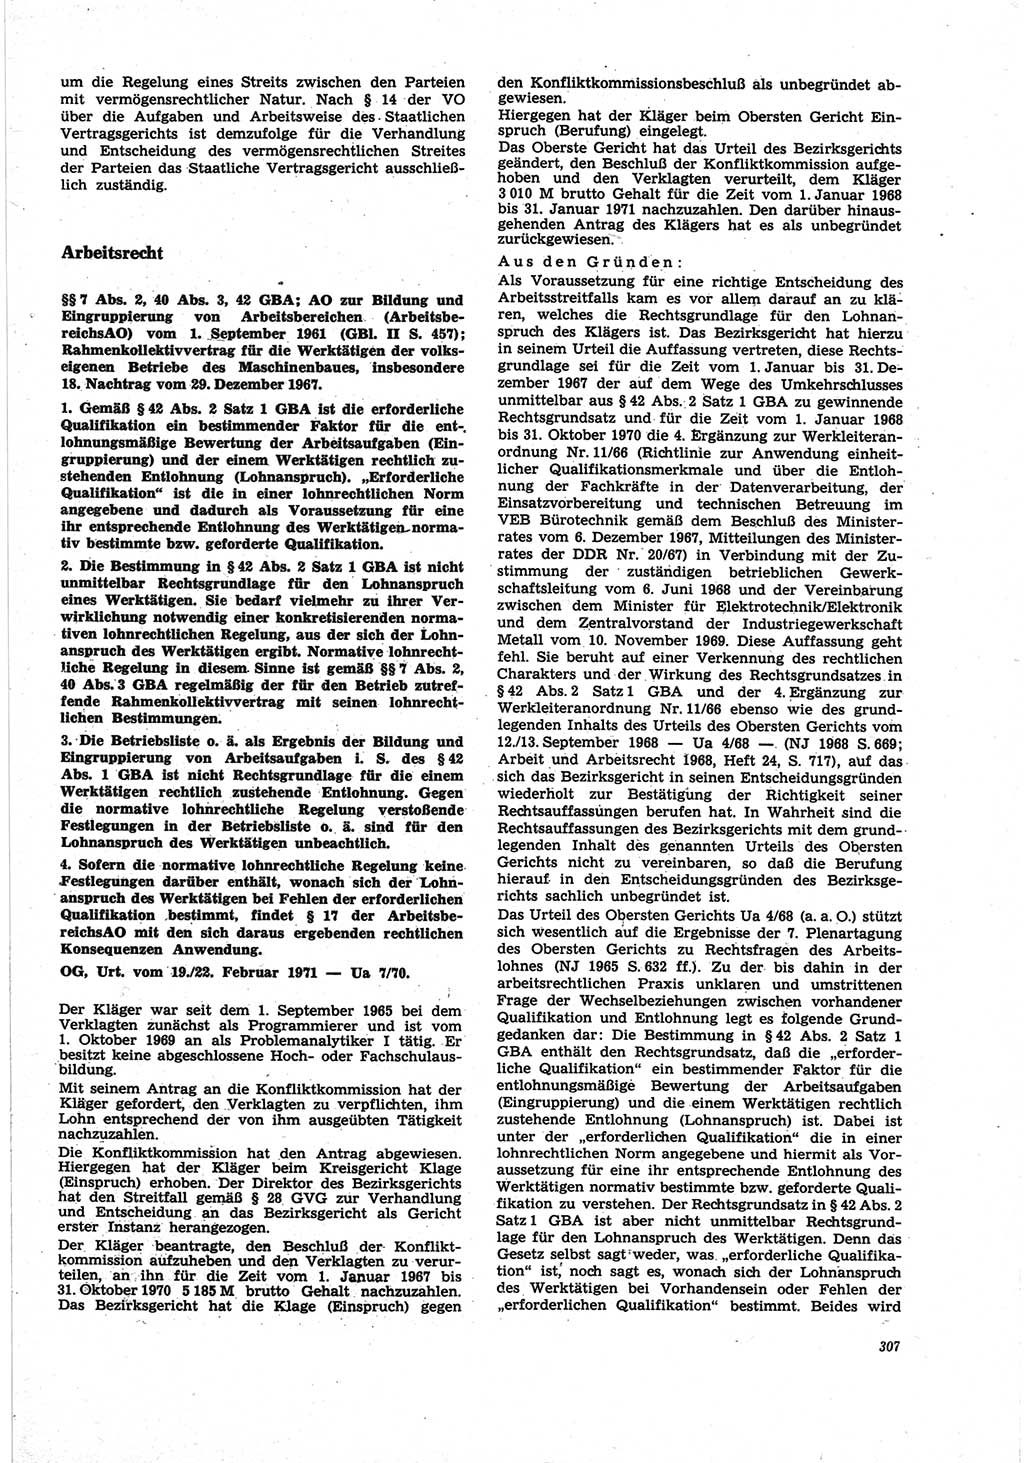 Neue Justiz (NJ), Zeitschrift für Recht und Rechtswissenschaft [Deutsche Demokratische Republik (DDR)], 25. Jahrgang 1971, Seite 307 (NJ DDR 1971, S. 307)